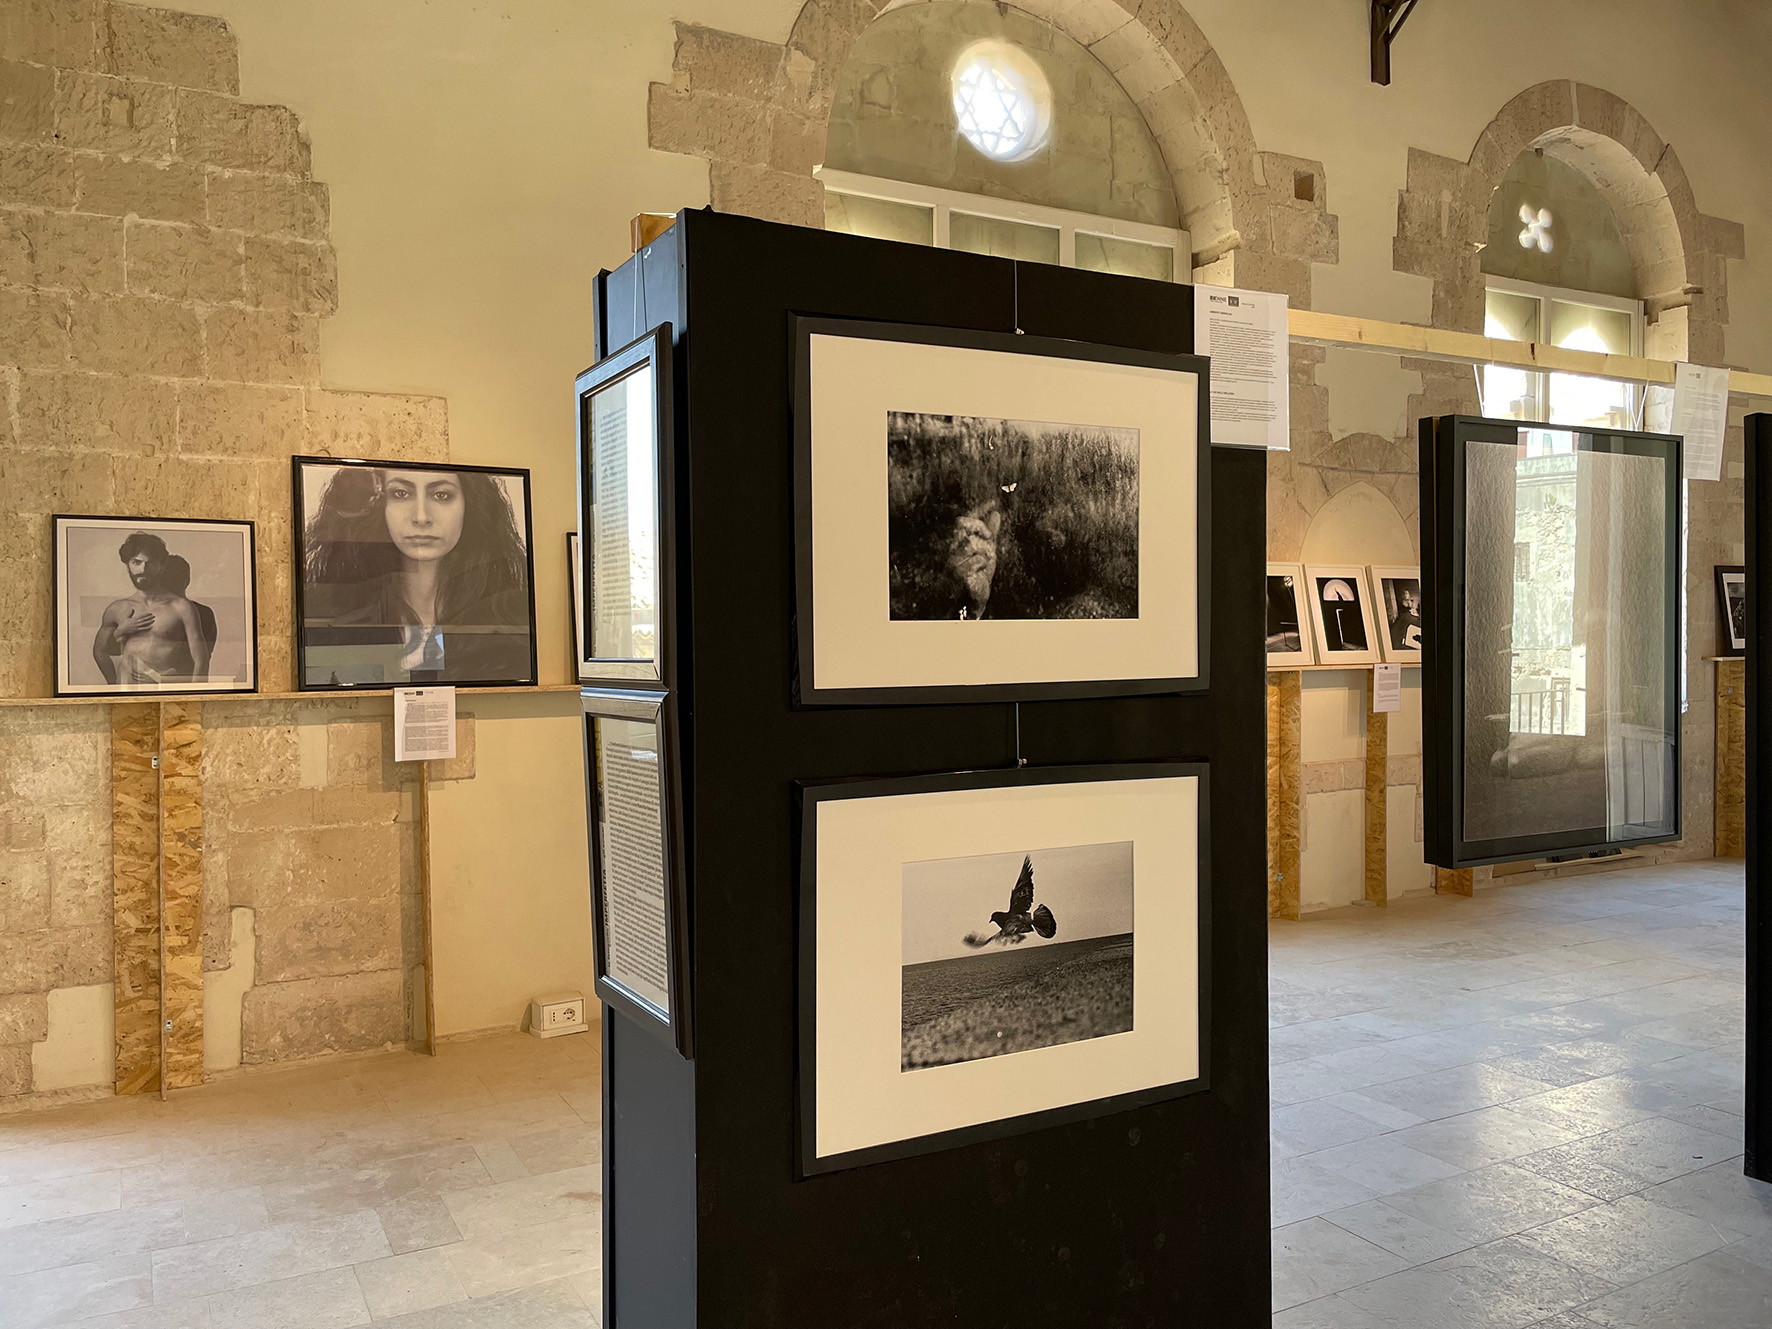 BiEnne, Stand Verdoliva, Exhibition view at Palazzo Montalto, Siracusa, 2022 ®ph Zito copia